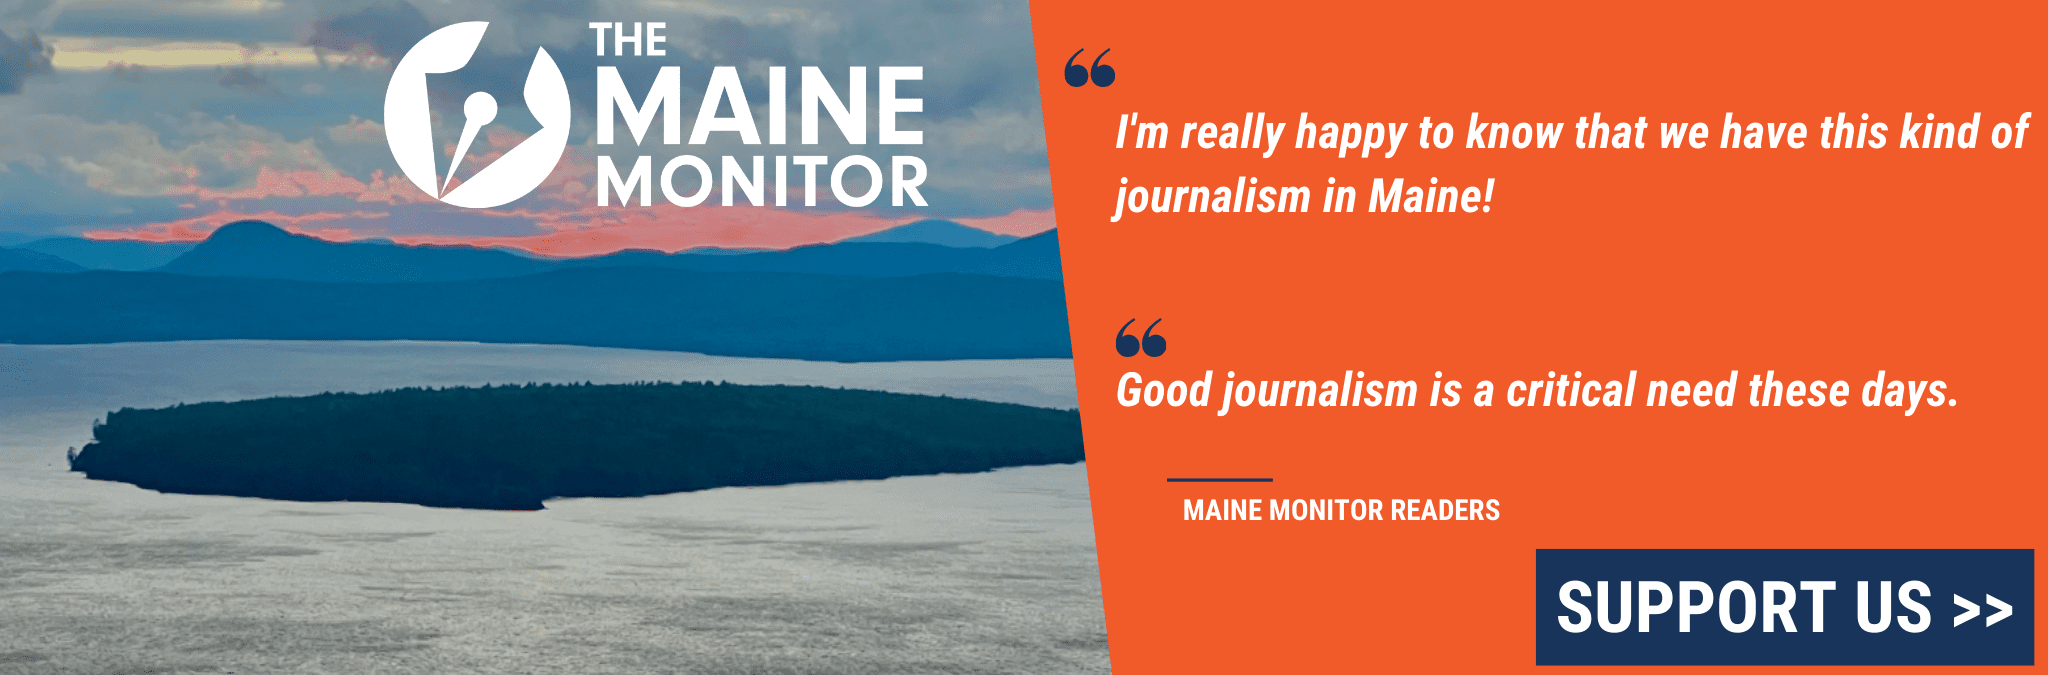 Um gráfico buscando doações.  Uma citação de dois leitores do Maine Monitor.  O primeiro diz "Estou muito feliz em saber que temos esse tipo de jornalismo no Maine!" o segundo diz "O bom jornalismo é uma necessidade crítica nos dias de hoje." Também é mostrada uma foto de uma ilha na costa do Maine, o logotipo do Maine Monitor e um botão de suporte.